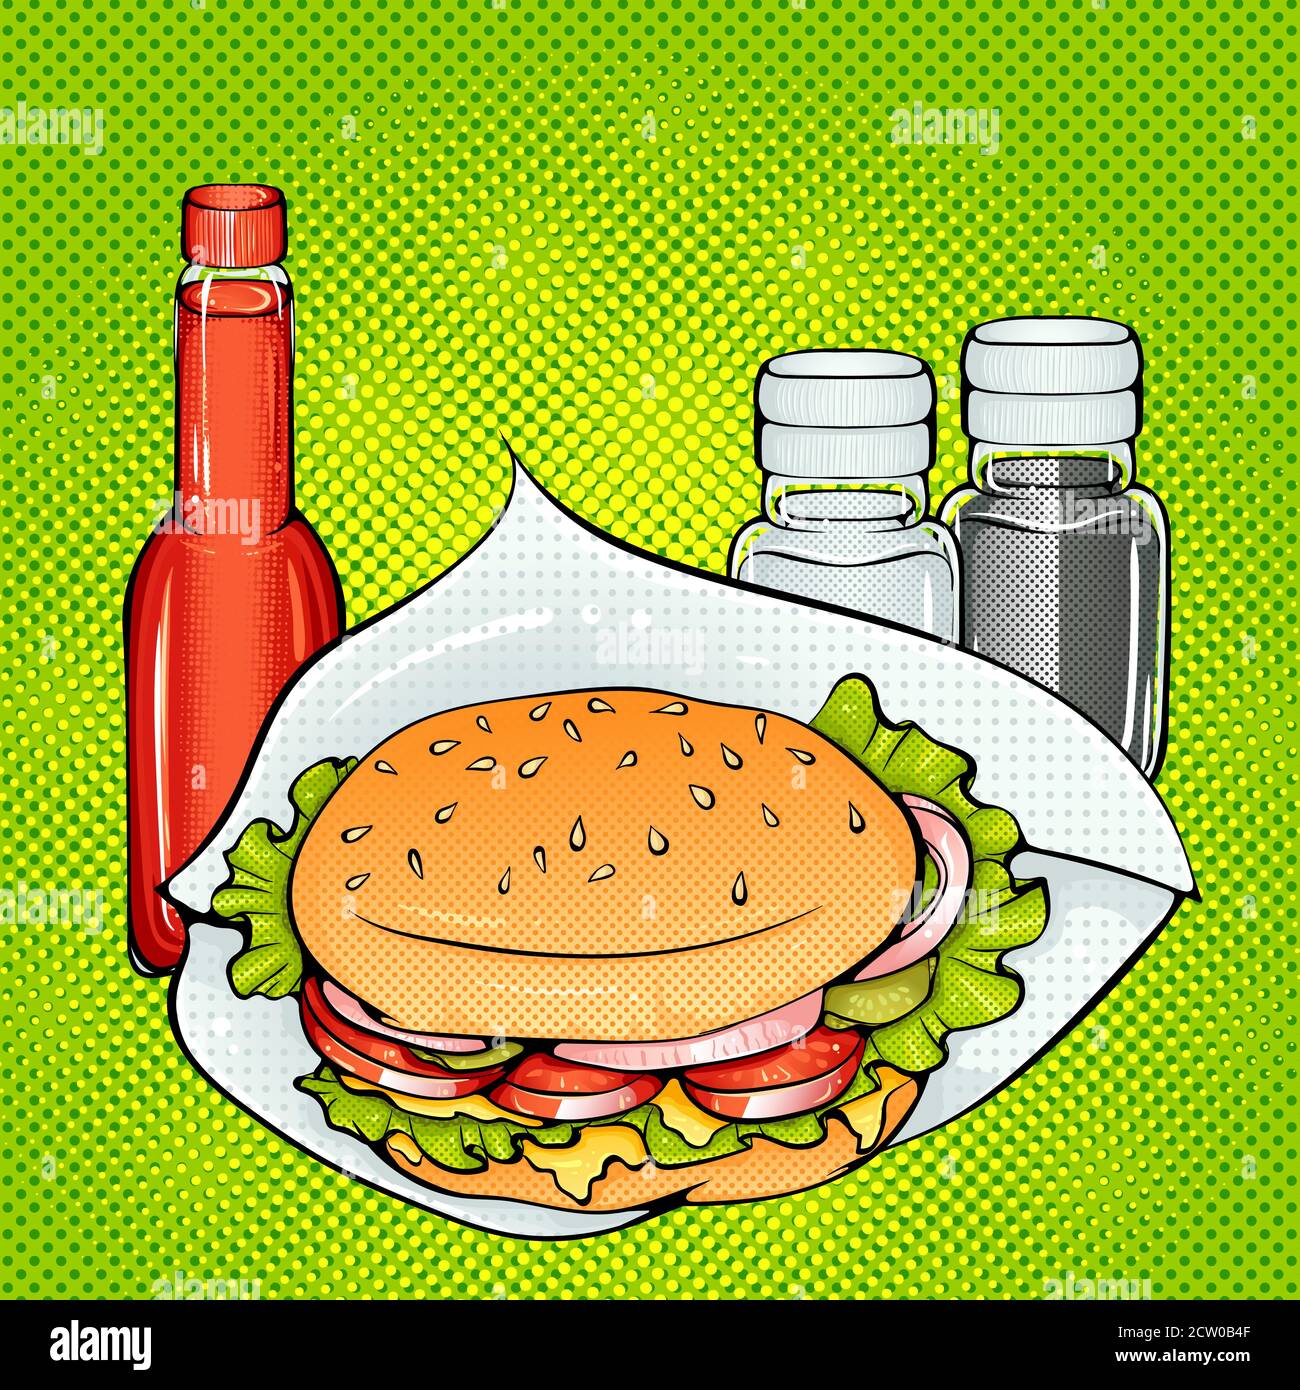 Burger mit Käse, Salz und Pfeffer Shaker und Tomatensauce. Vektor helle Farbe Pop Art Illustration. Fastfood-Poster im Retro-Pop-Art-Stil. Abbildung für den Druck Stock Vektor